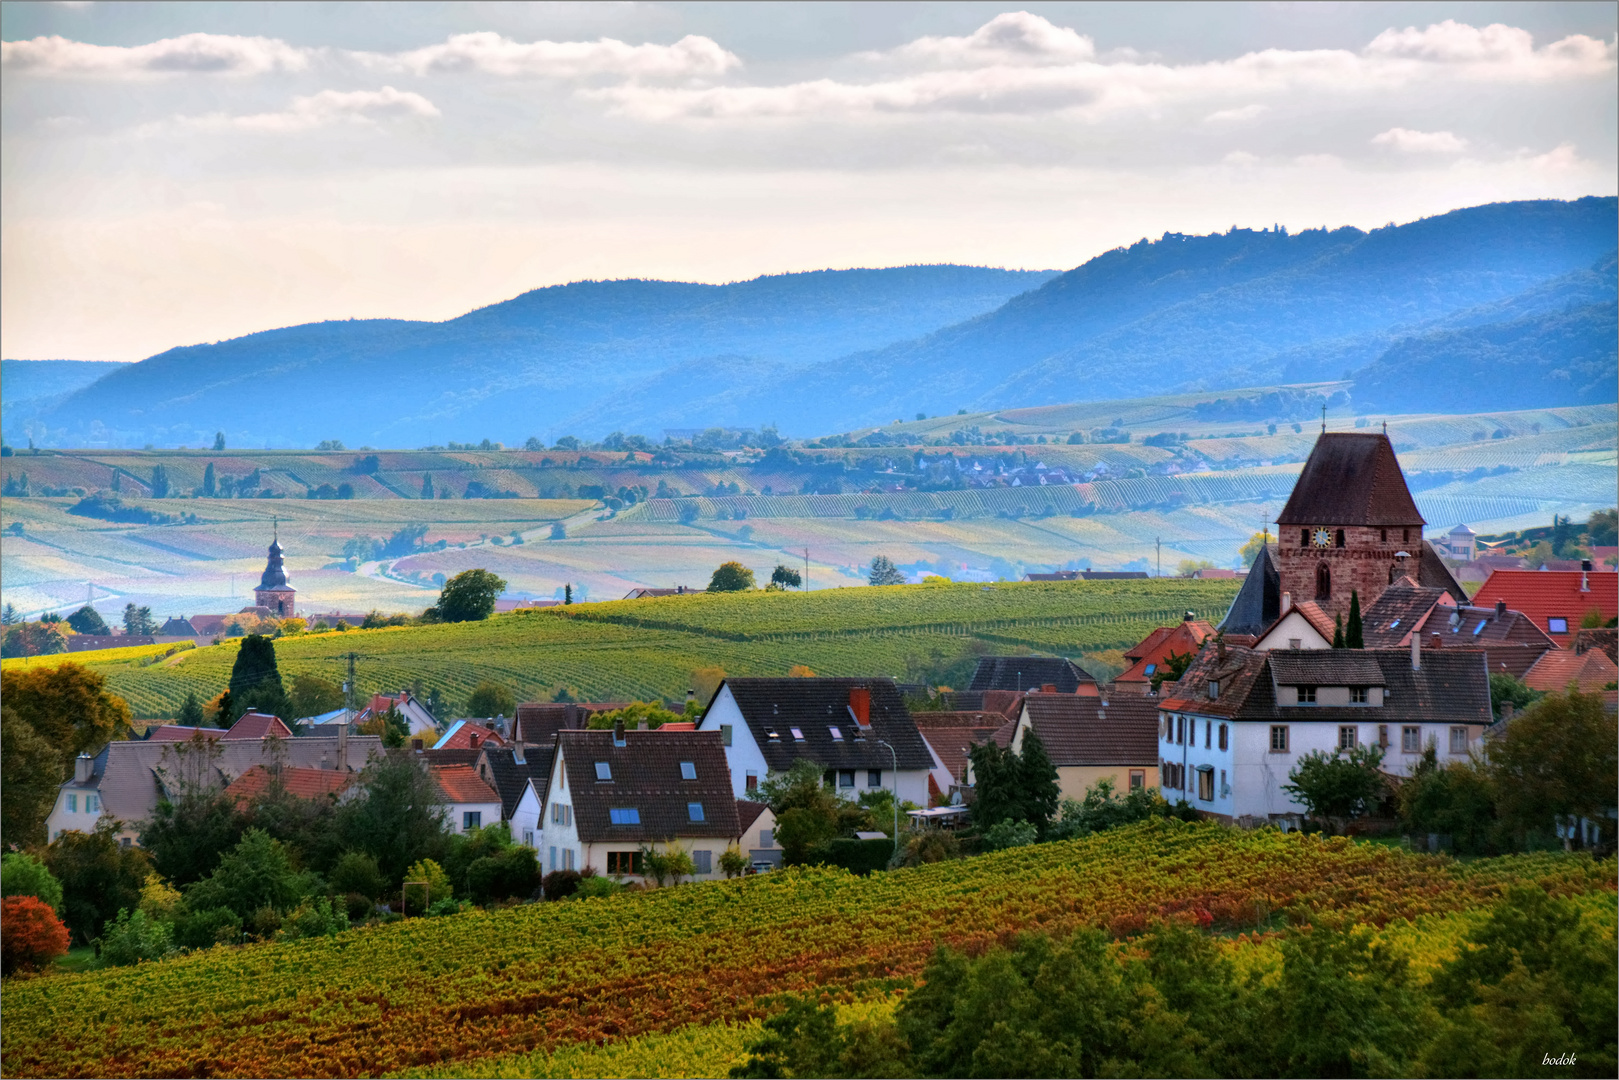 Pfalz: Die Toskana Deutschlands